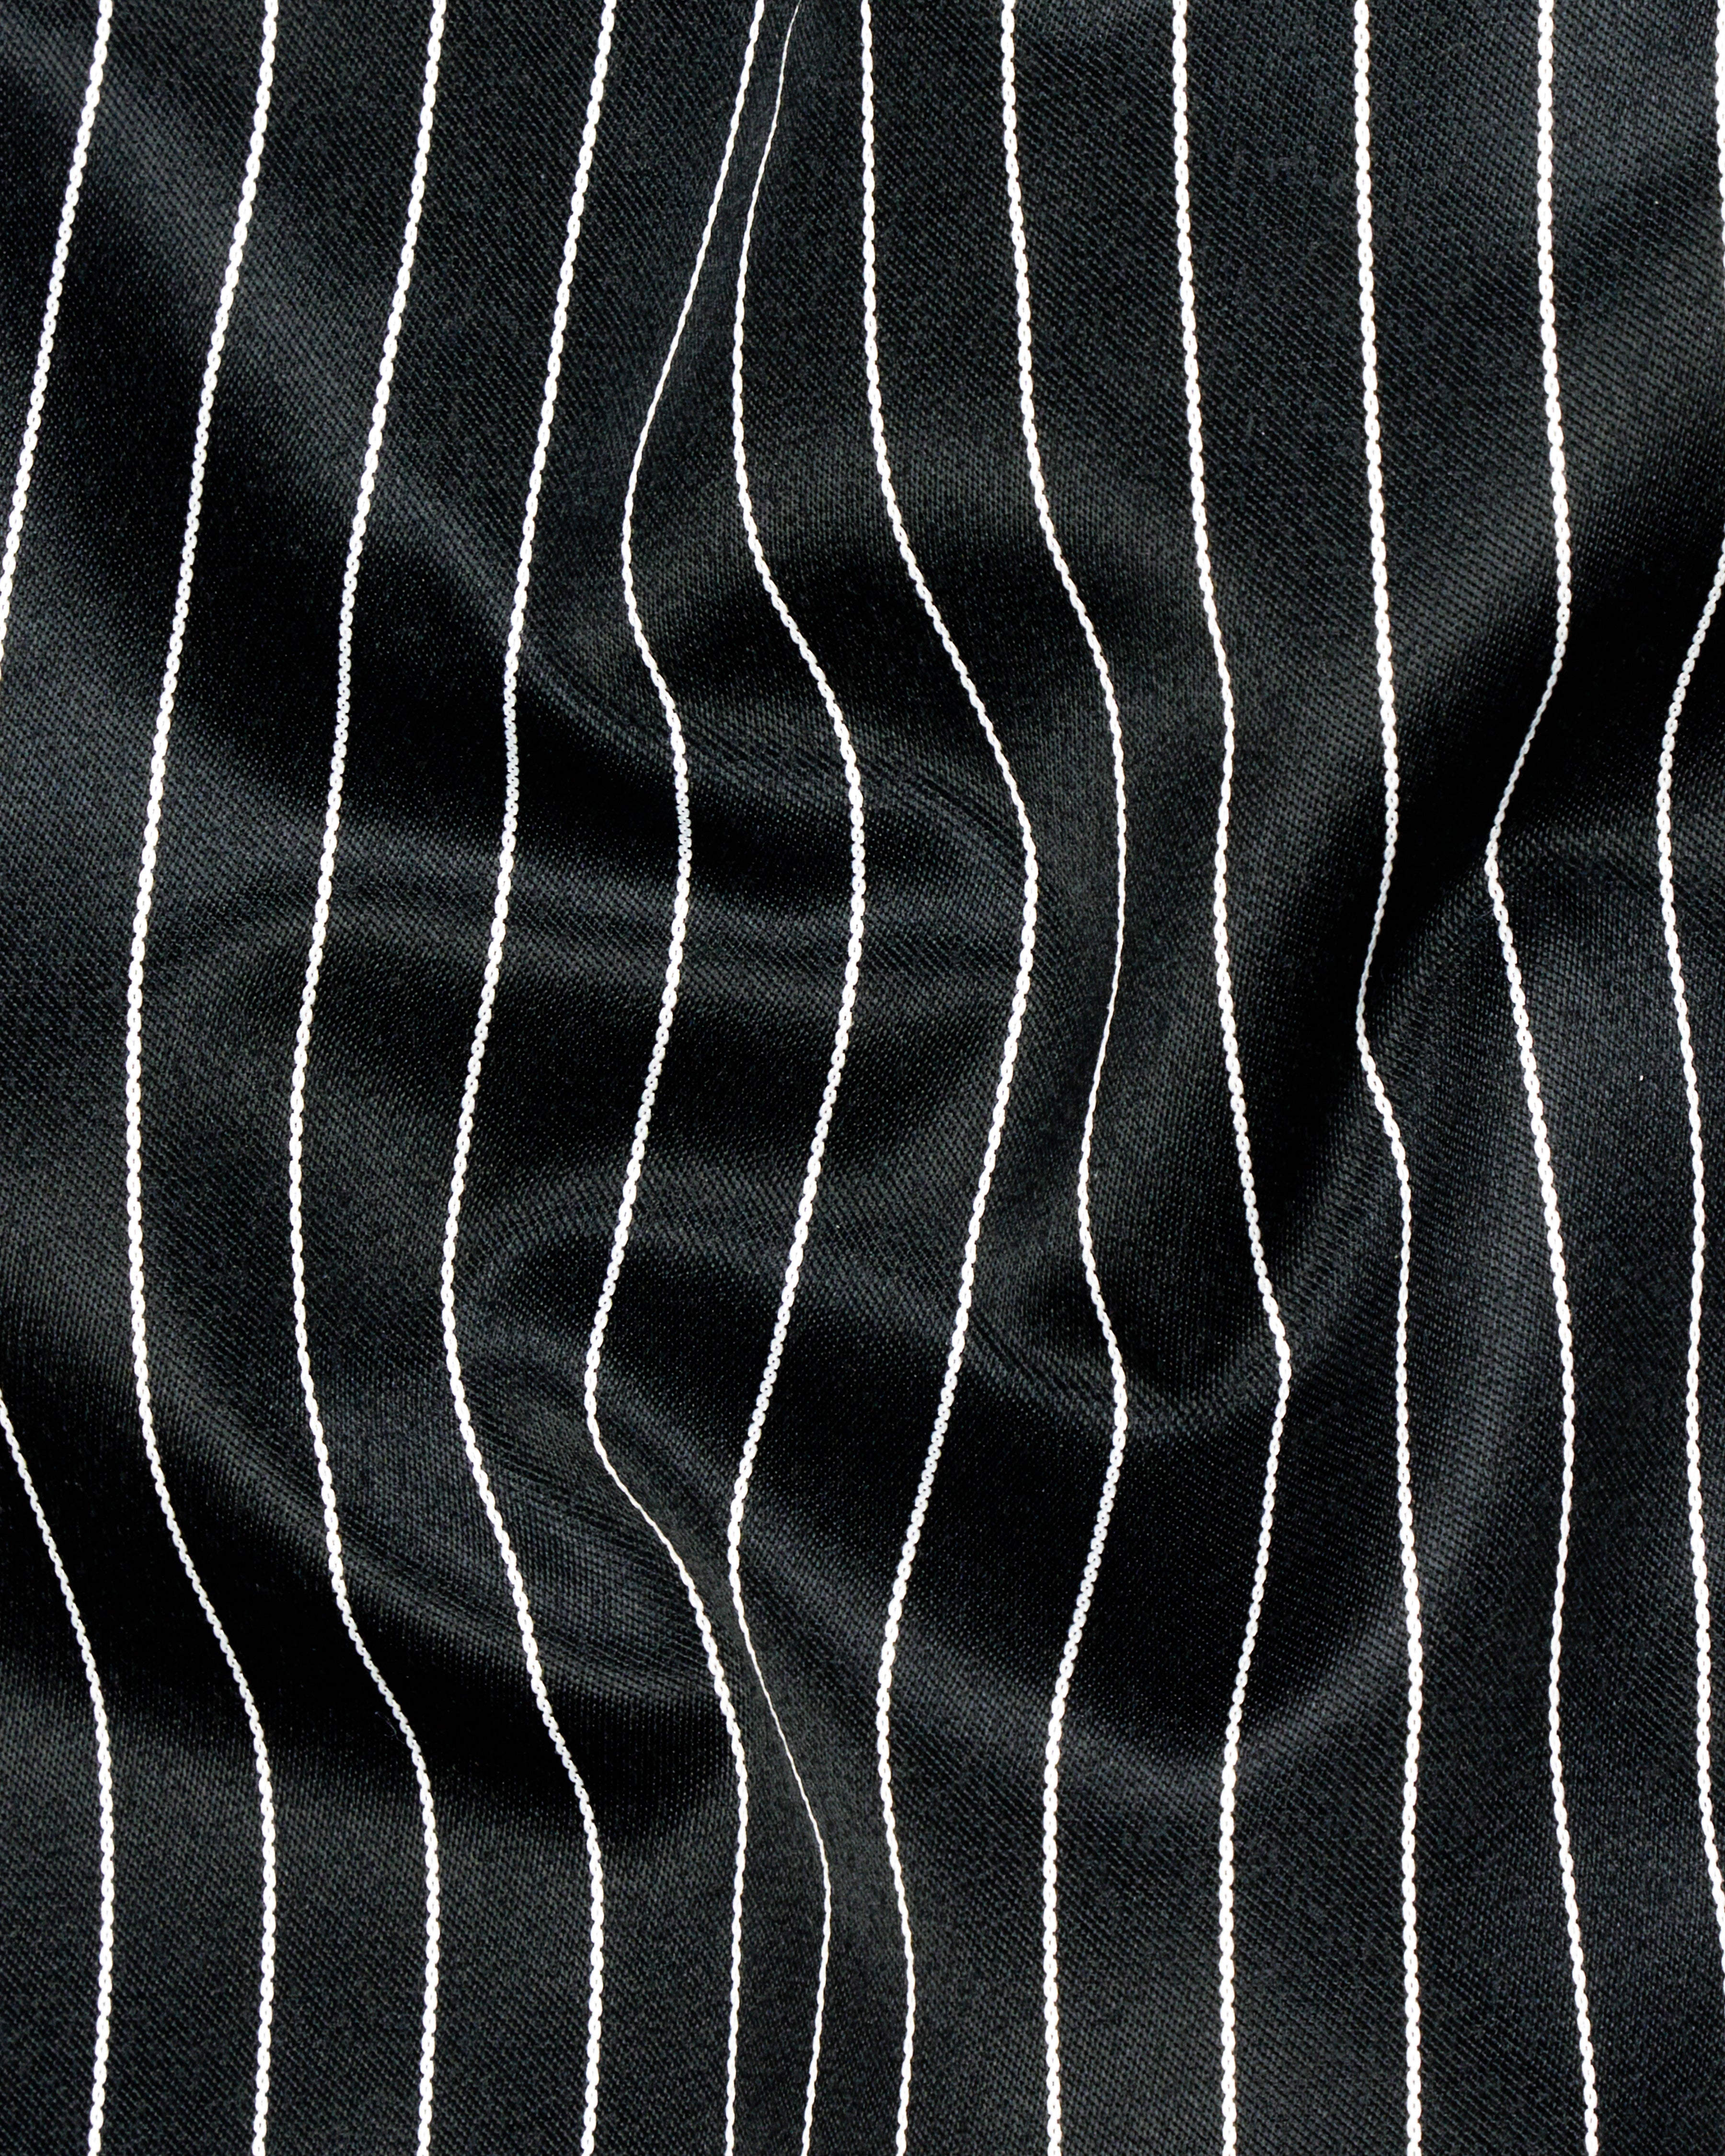 Jade Black and White Striped Waistcoat V2612-36, V2612-38, V2612-40, V2612-42, V2612-44, V2612-46, V2612-48, V2612-50, V2612-52, V2612-54, V2612-56, V2612-58, V2612-60